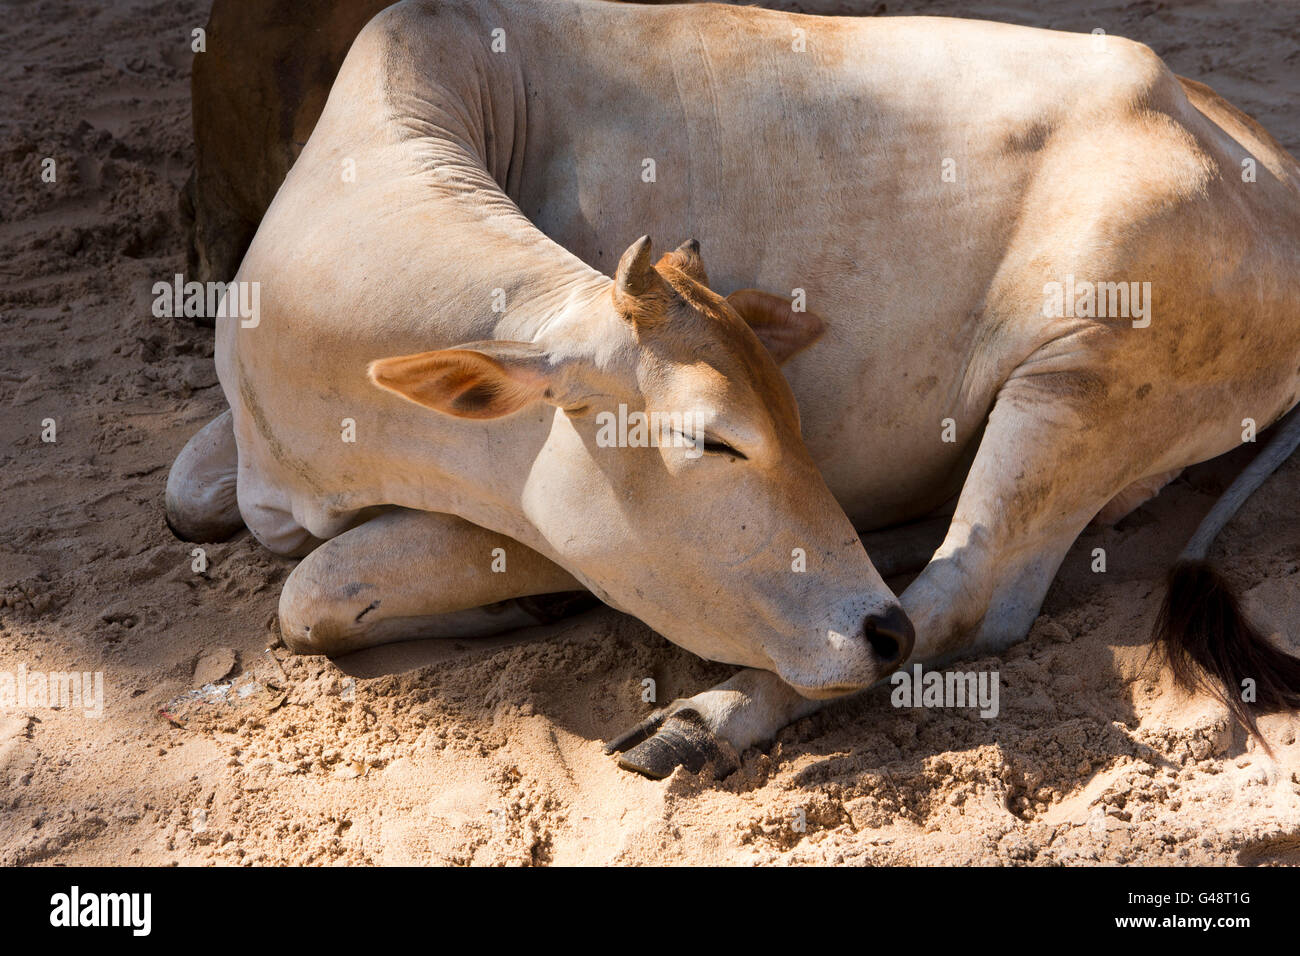 Sri Lanka, Mirissa, cow asleep on beach Stock Photo